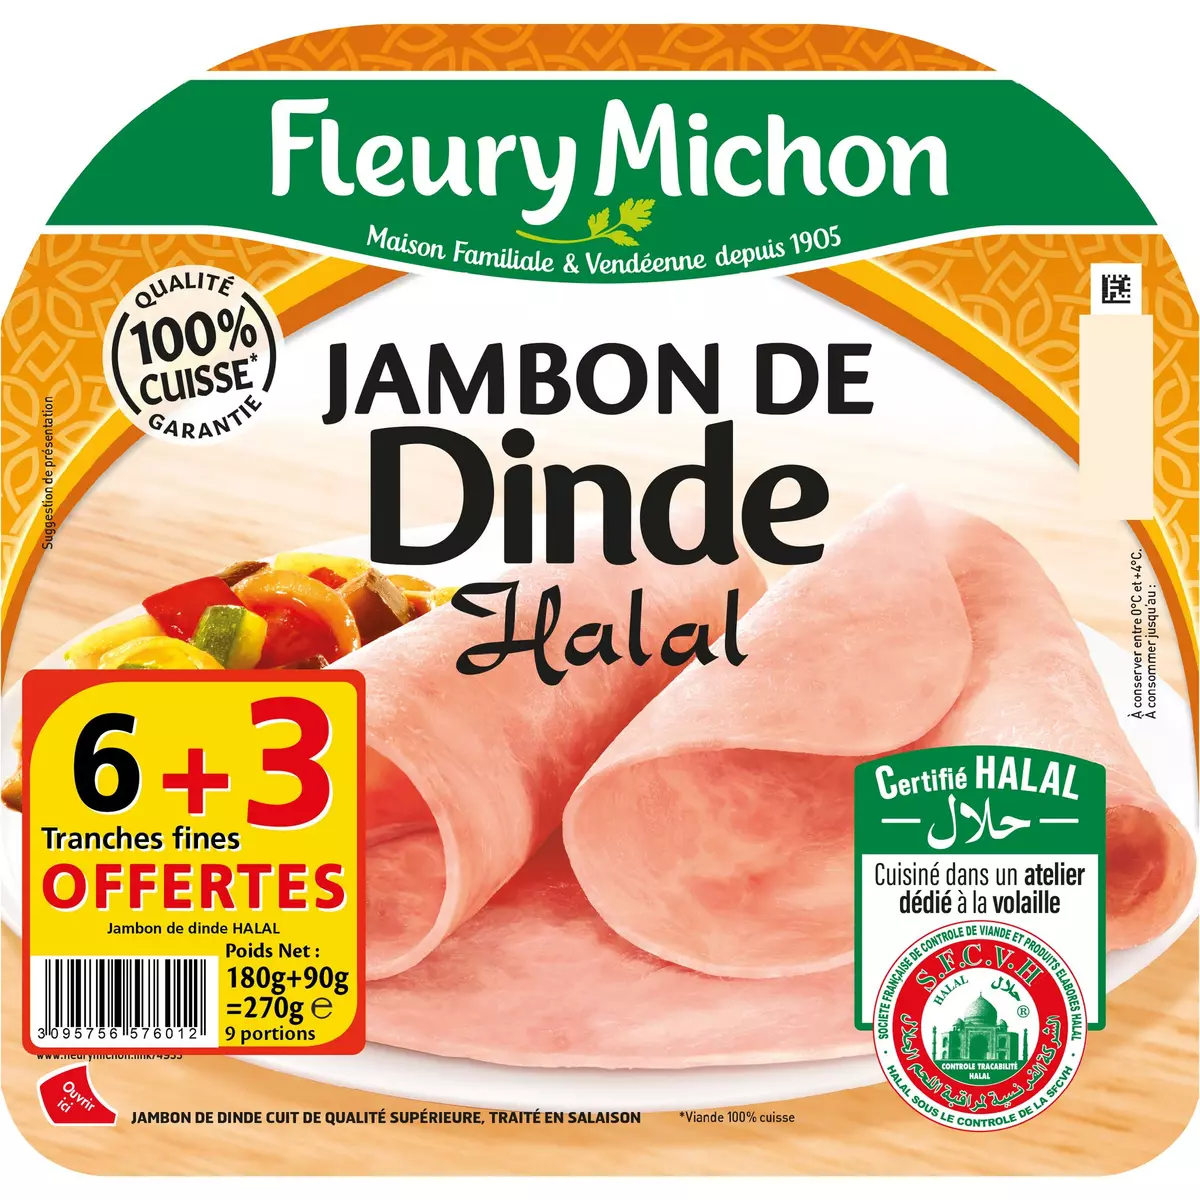 FLEURY MICHON Jambon de dinde halal 6 tranches+3 offertes 270g